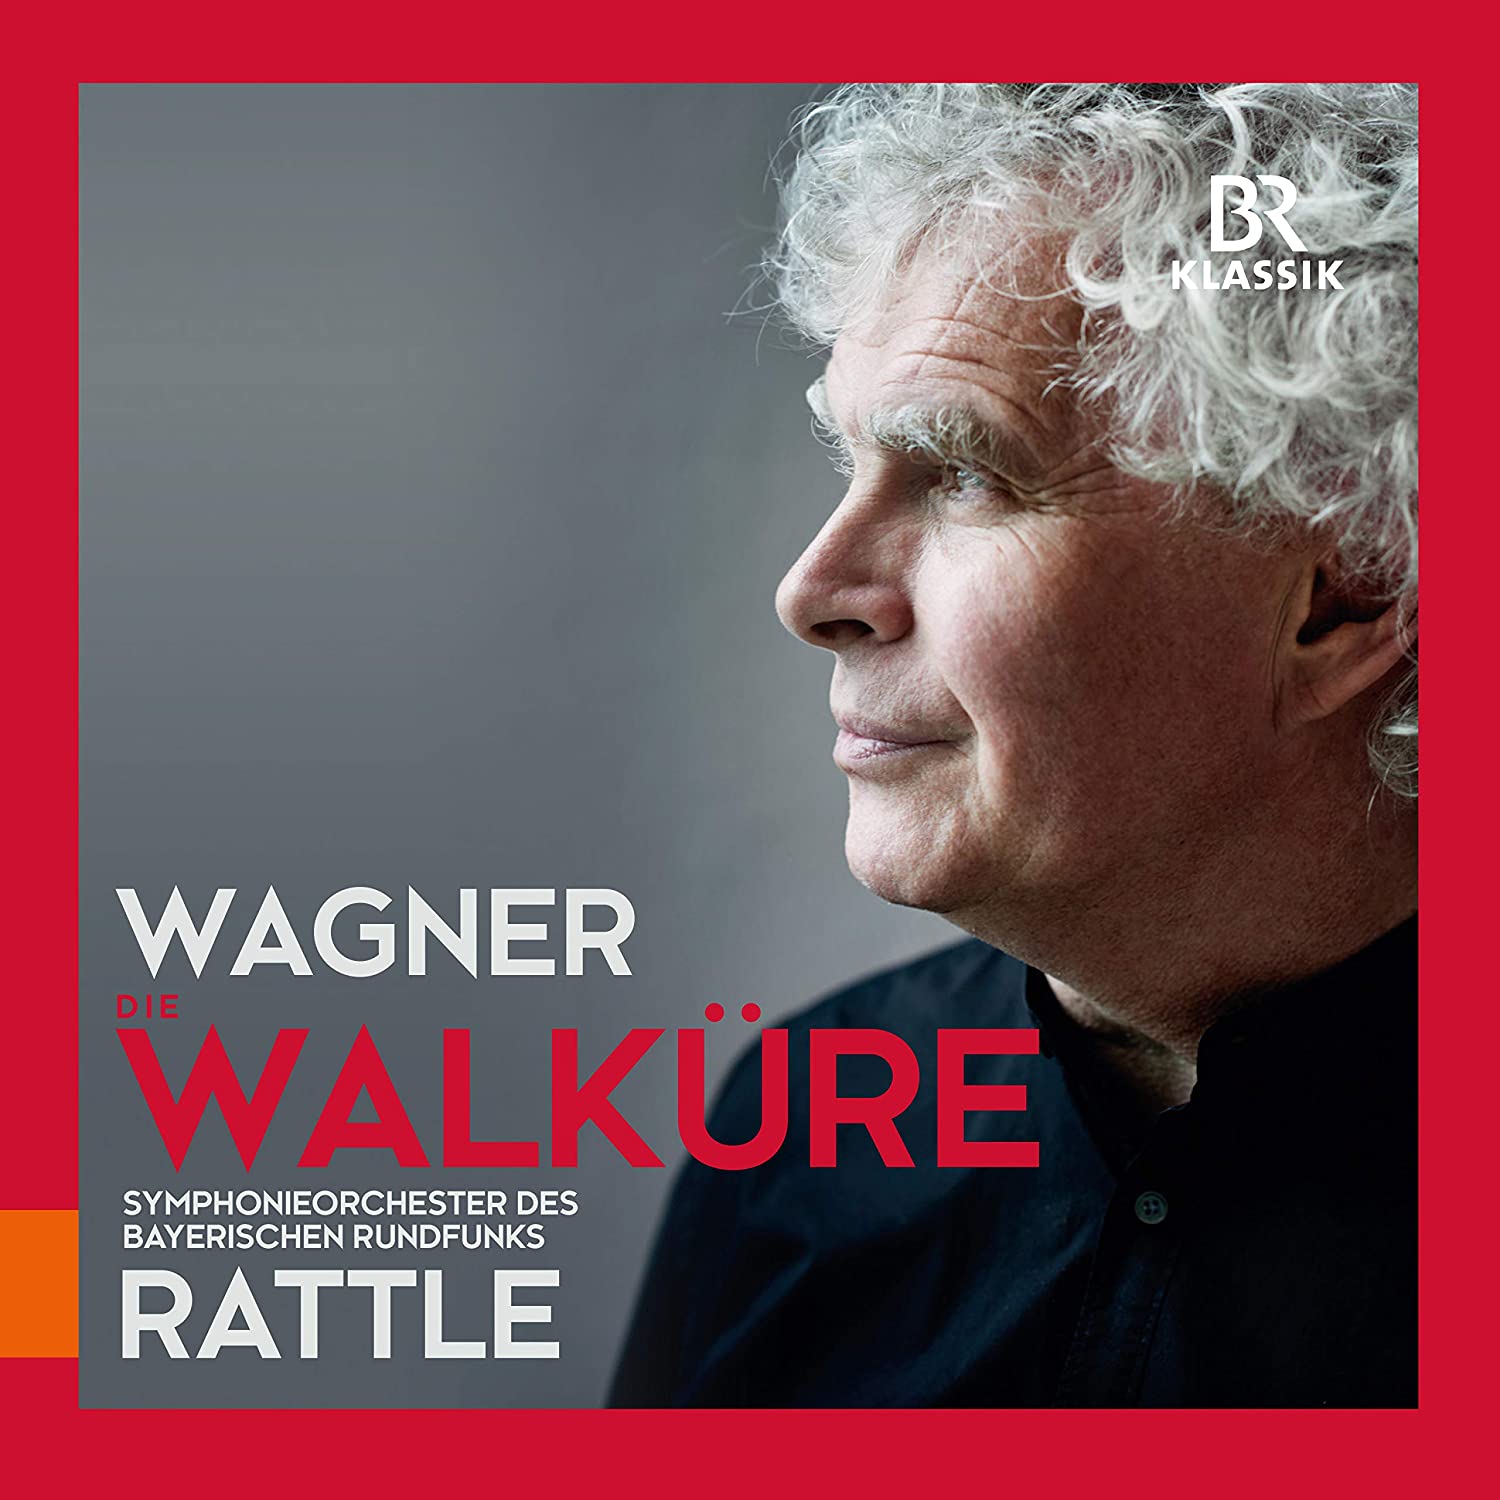 Wagner_Walkyrie_Orchestre-symphonique-de-la-Radio-bavaroise_Simon-Rattle_BR-Klassik